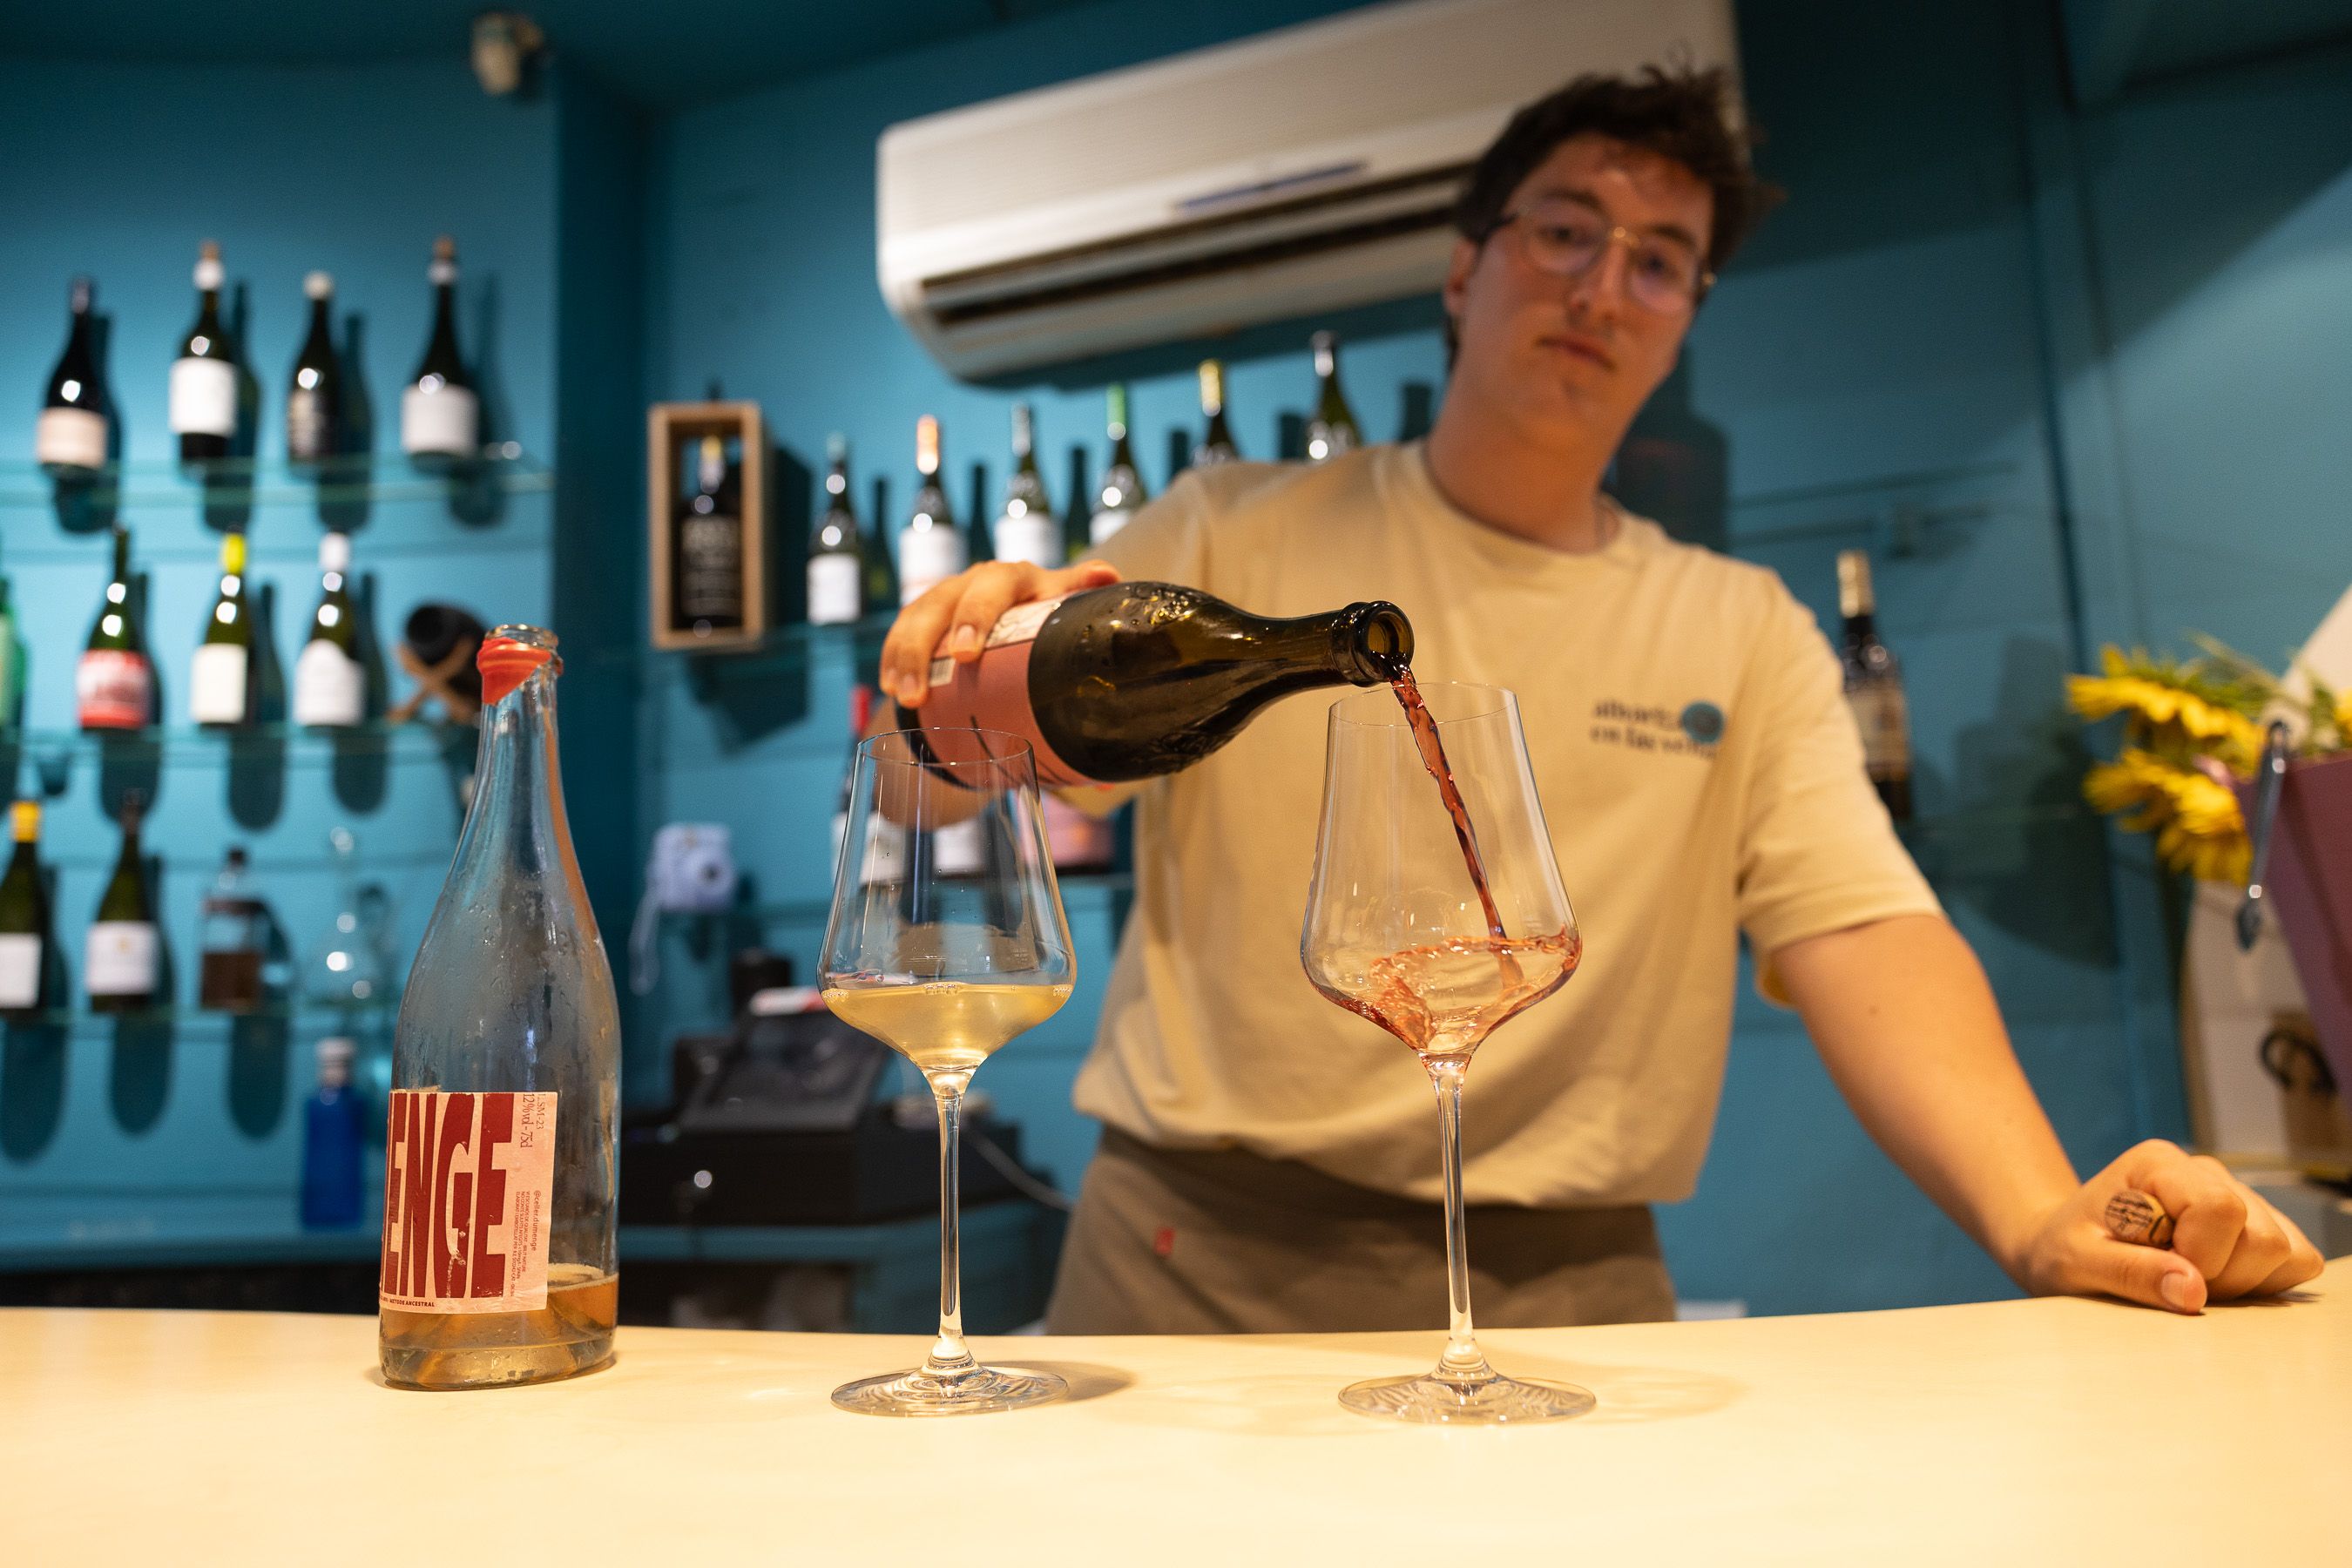 Juan Carlos sirve uno de los vinos de su catálogo.